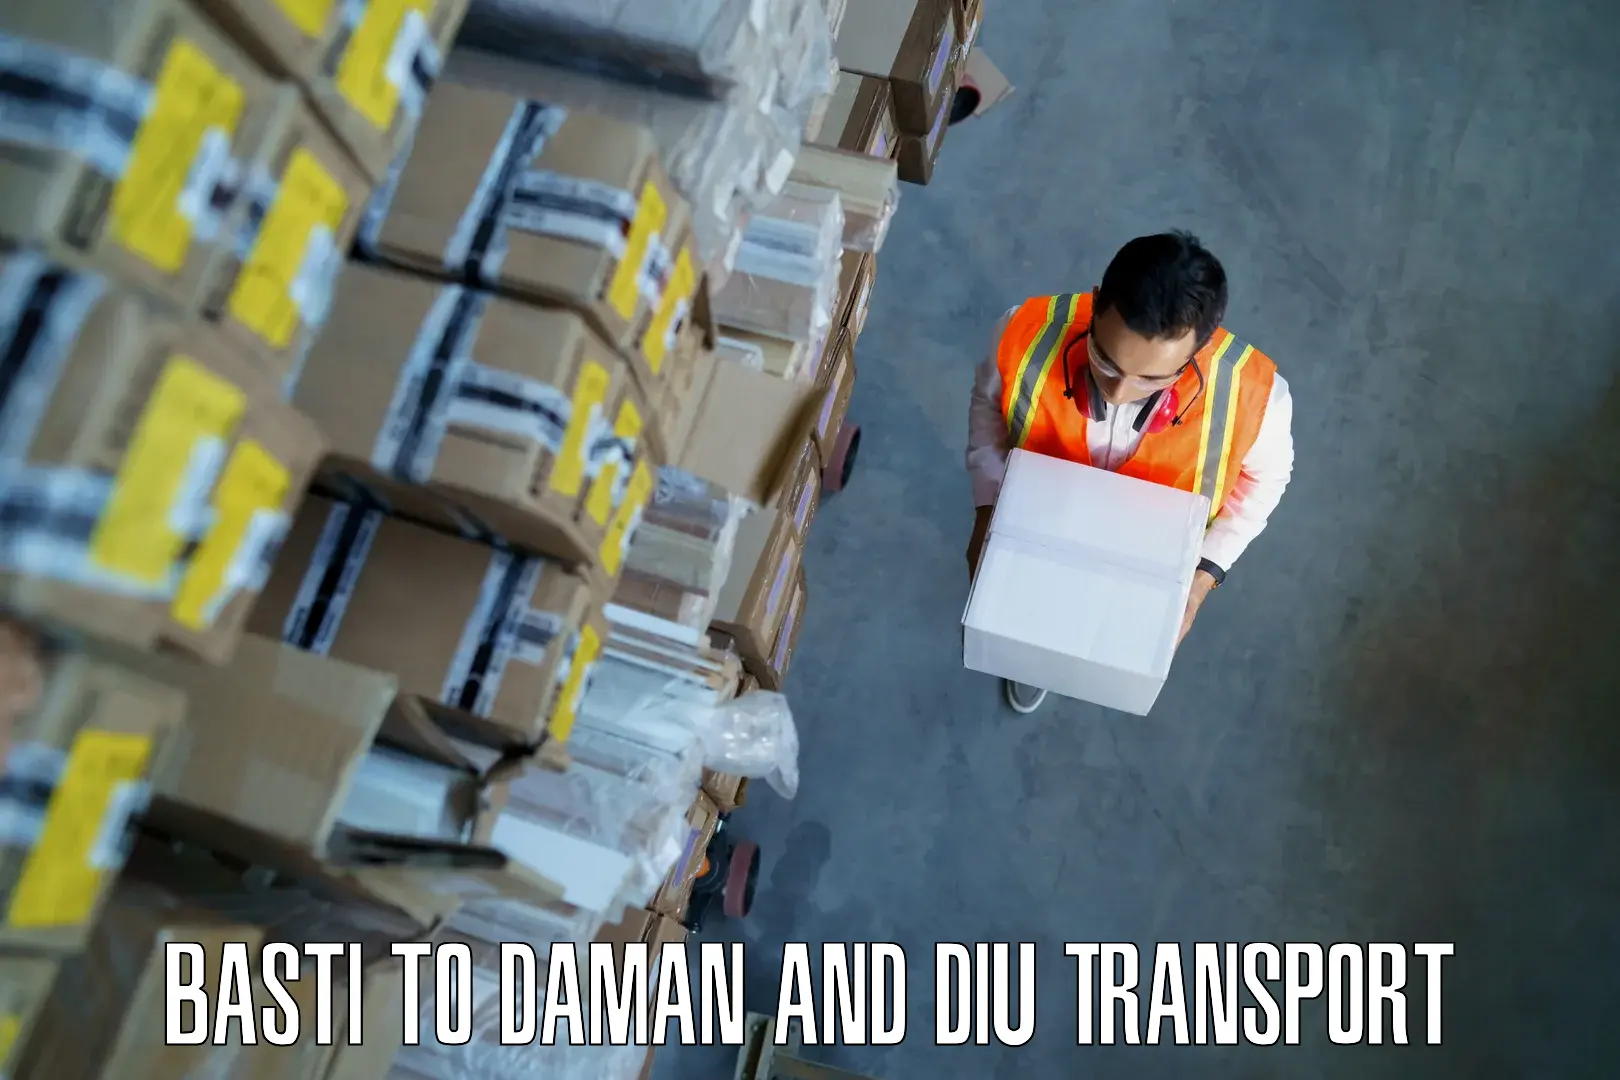 Delivery service Basti to Diu